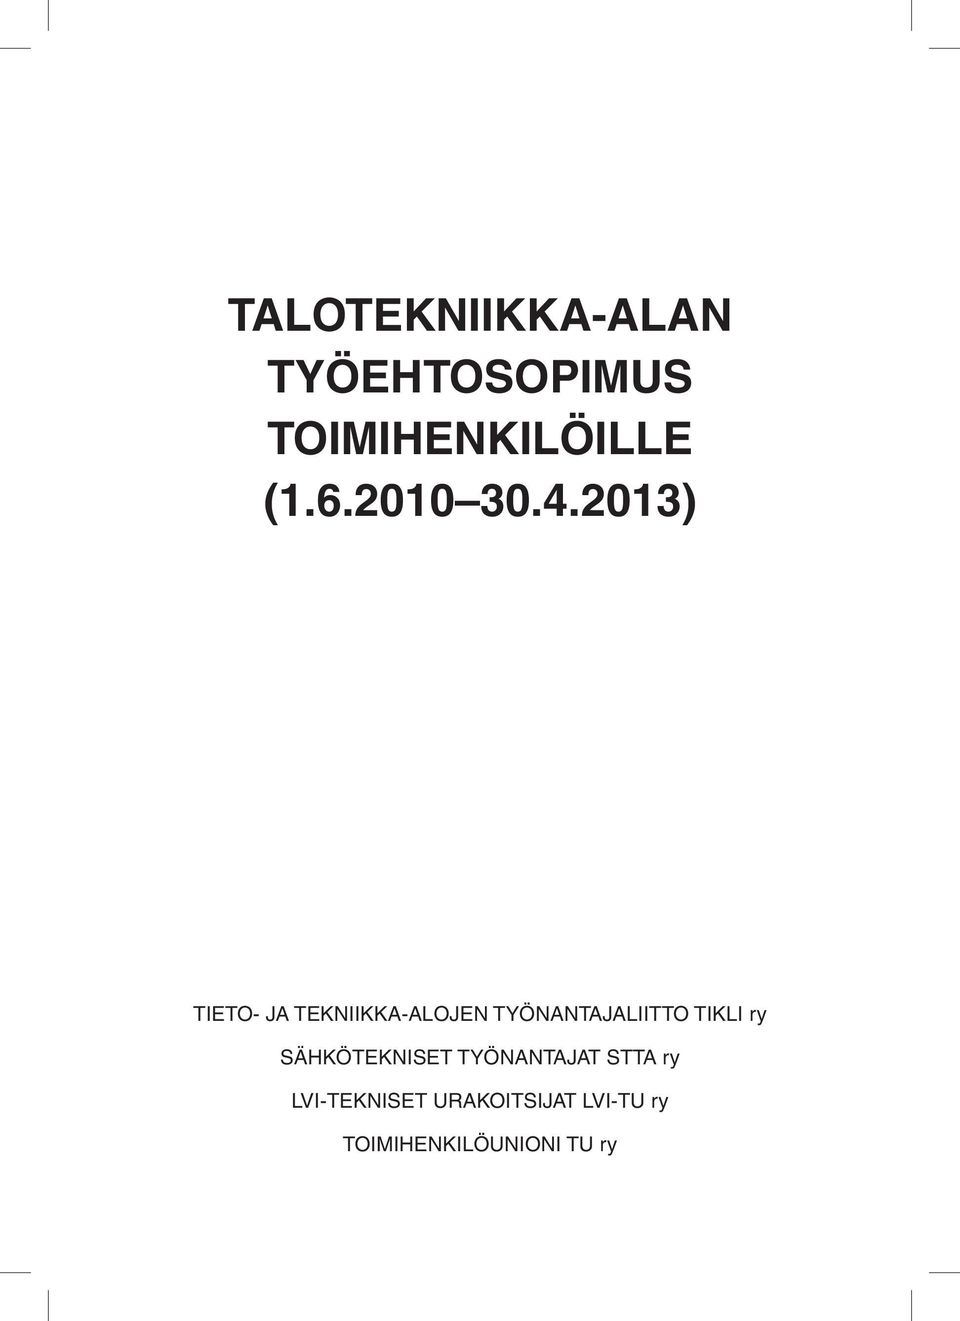 2013) TIETO- JA TEKNIIKKA-ALOJEN TYÖNANTAJALIITTO